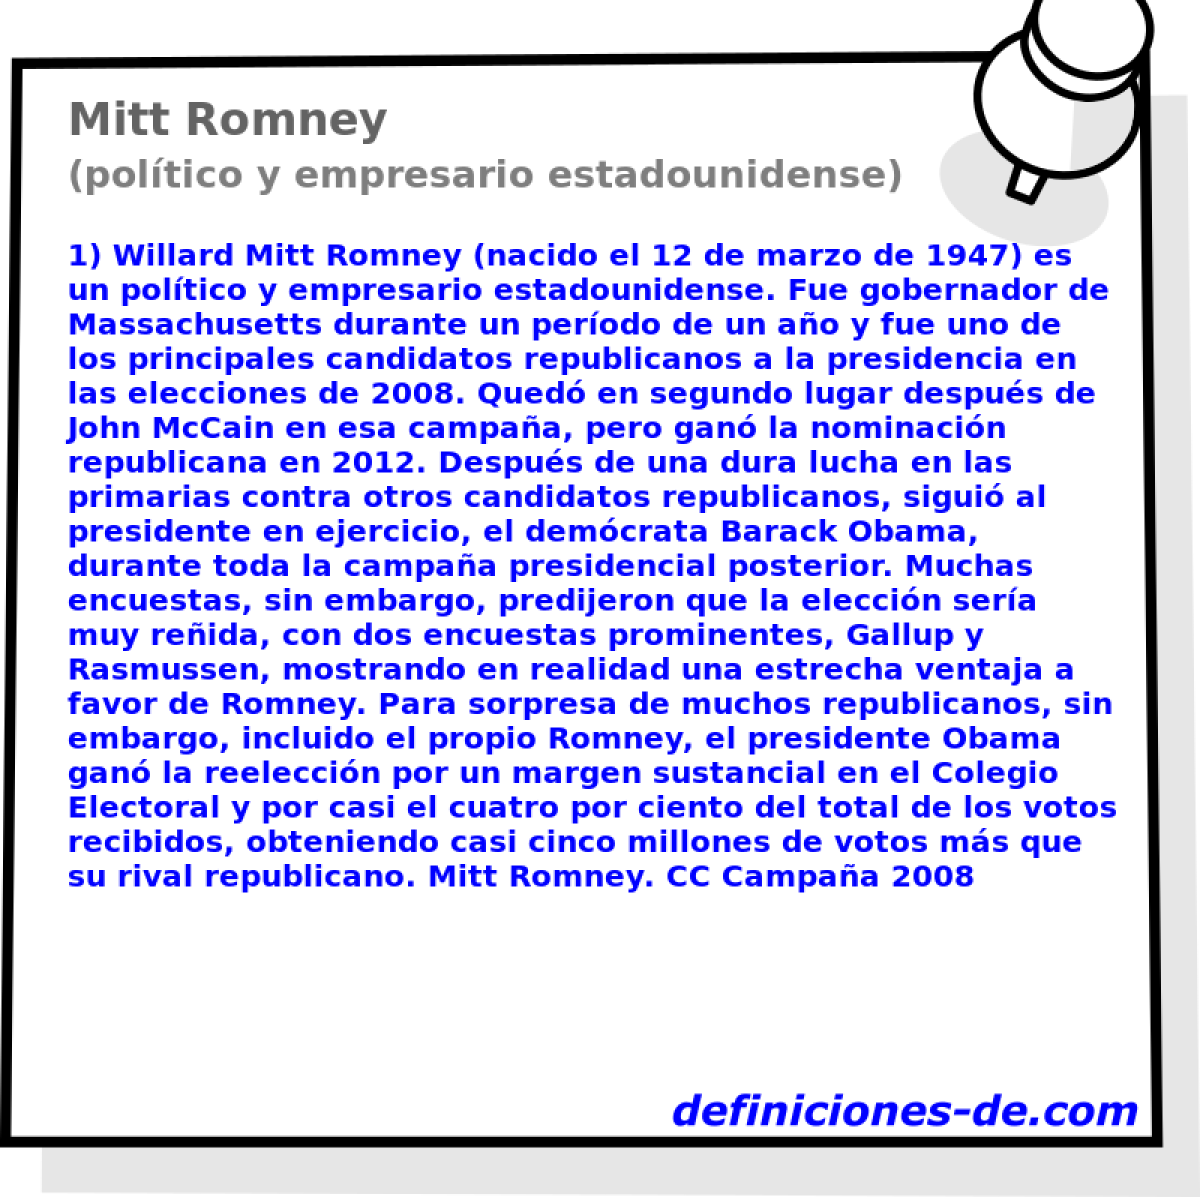 Mitt Romney (poltico y empresario estadounidense)